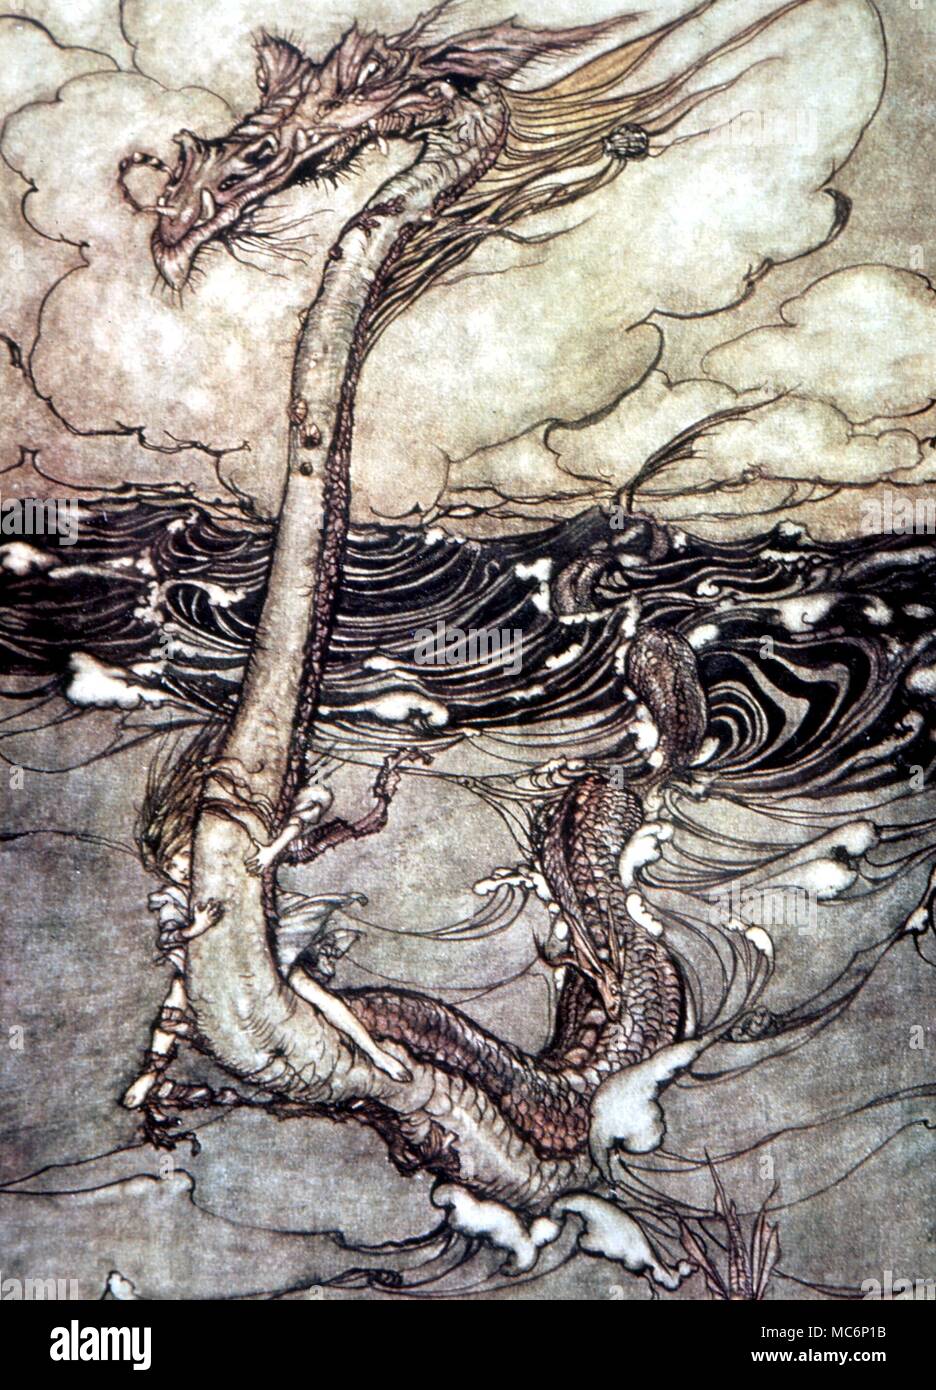 Monstres - serpent de mer par Arthur Rackham. Du livre arc-en-ciel', 1909 Banque D'Images